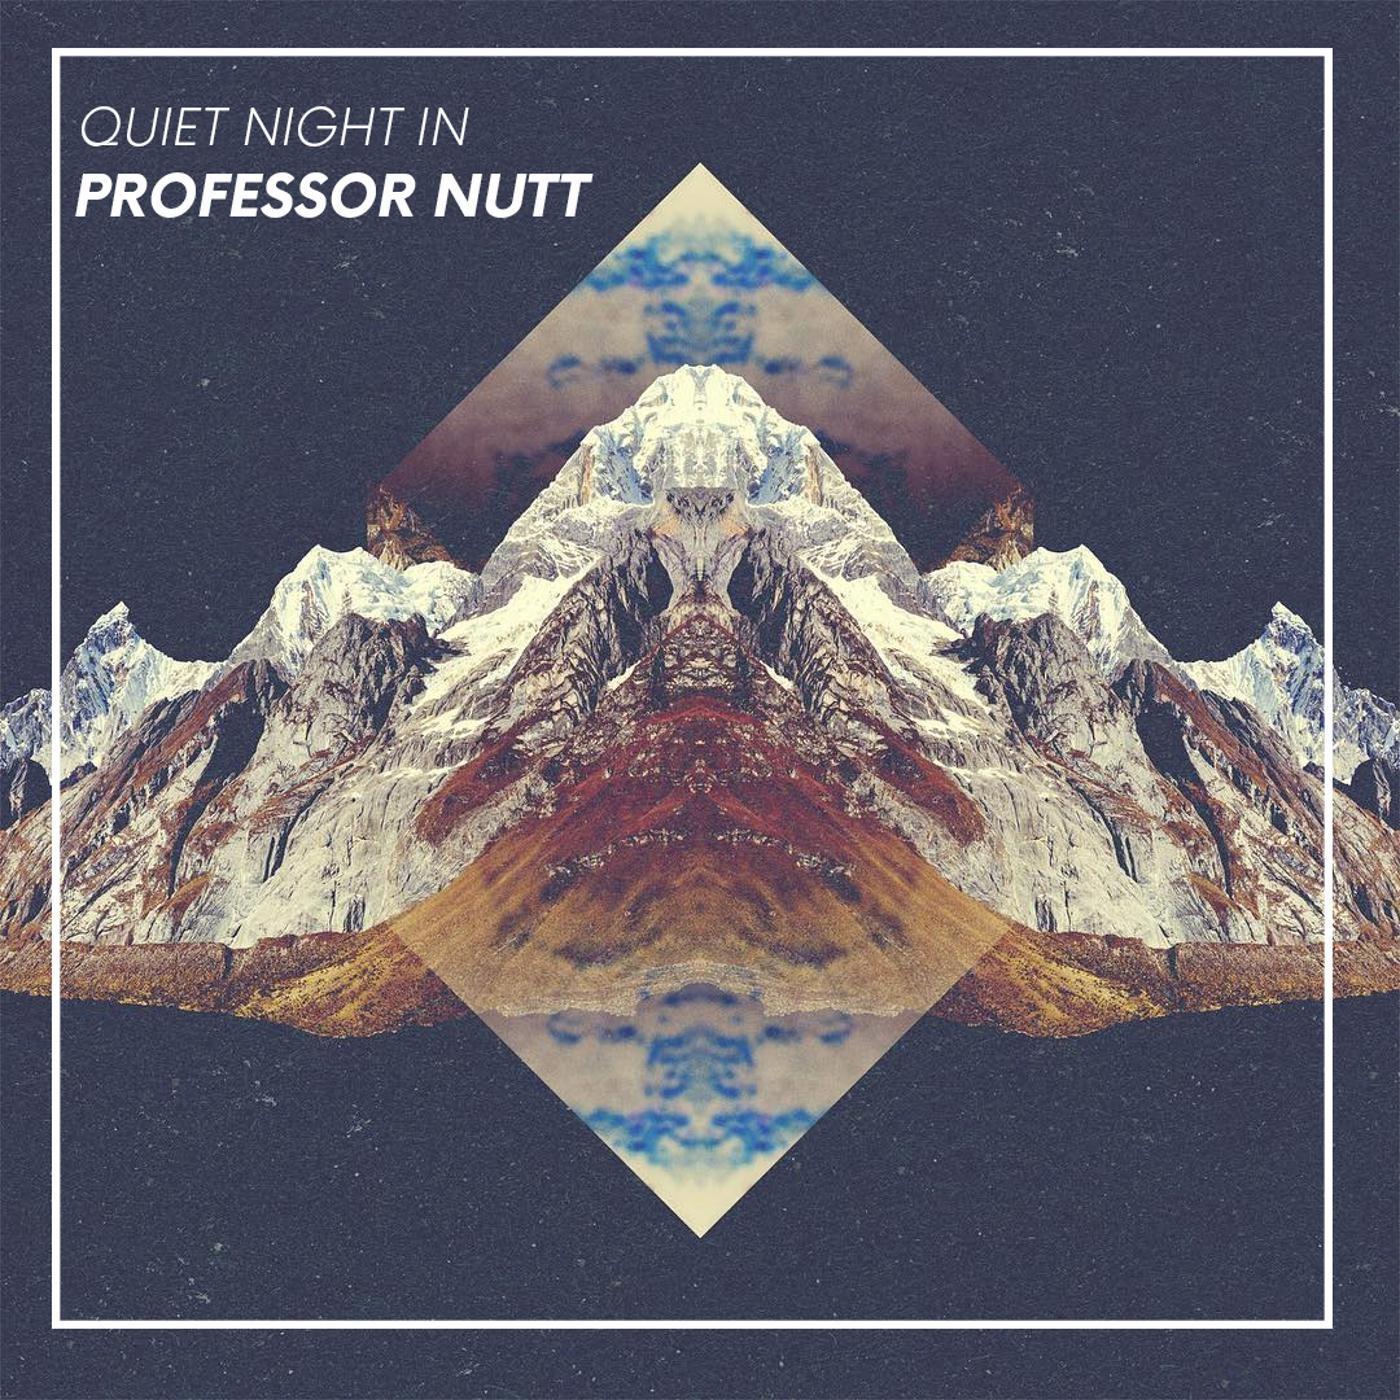 Professor Nutt